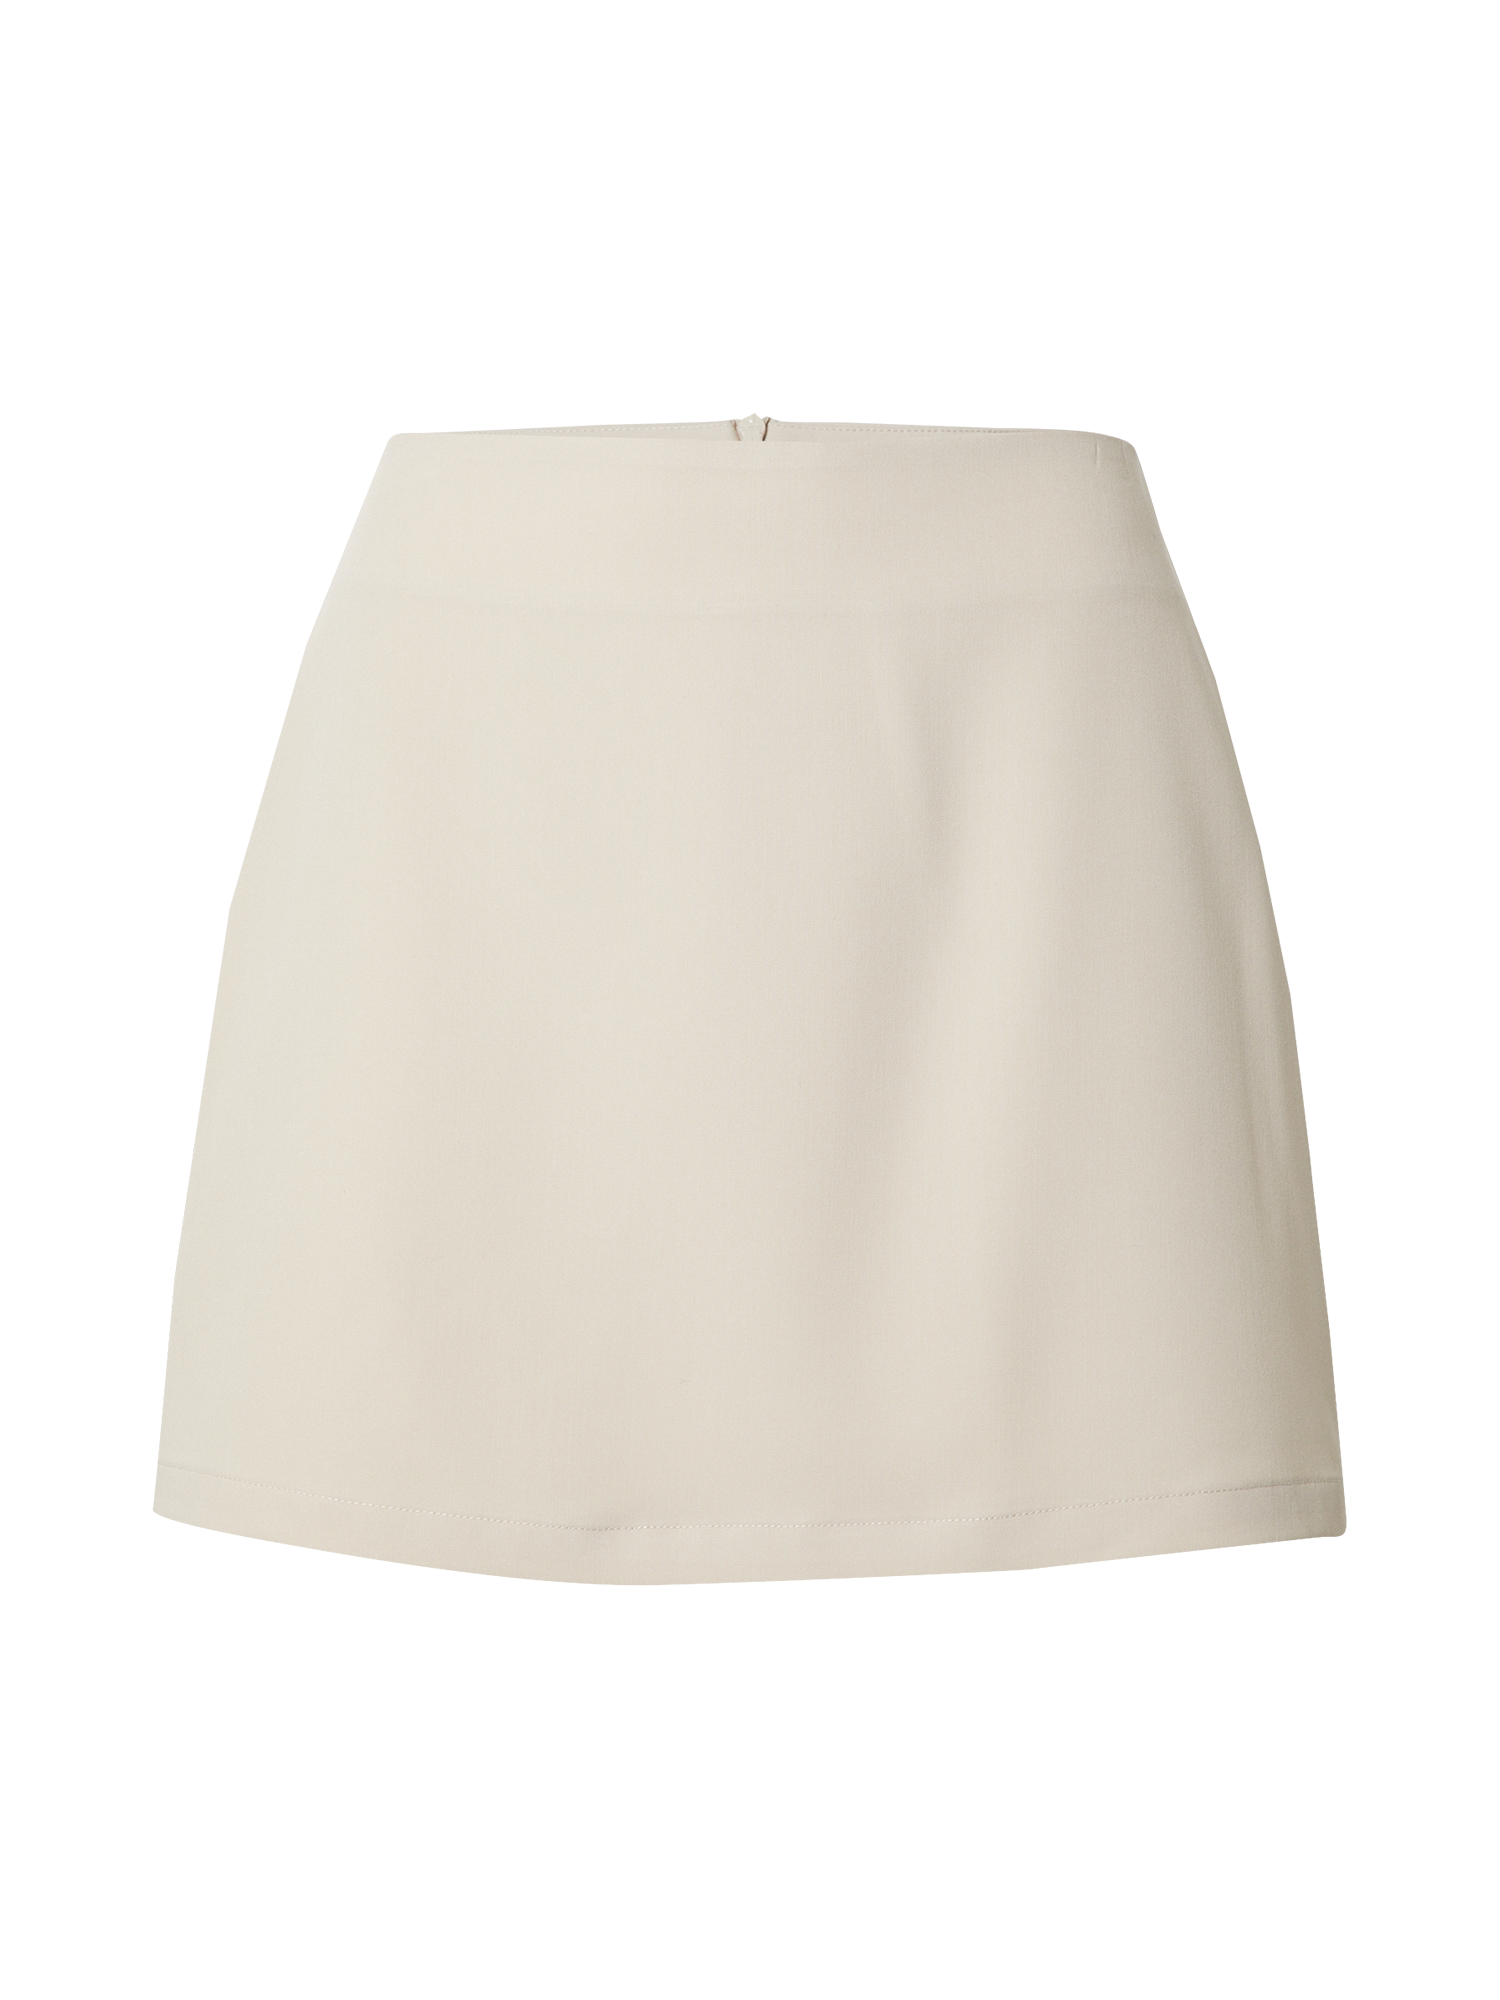 Odzież Kobiety  x Laura Giurcanu Spódnica Megan w kolorze Beżowym 